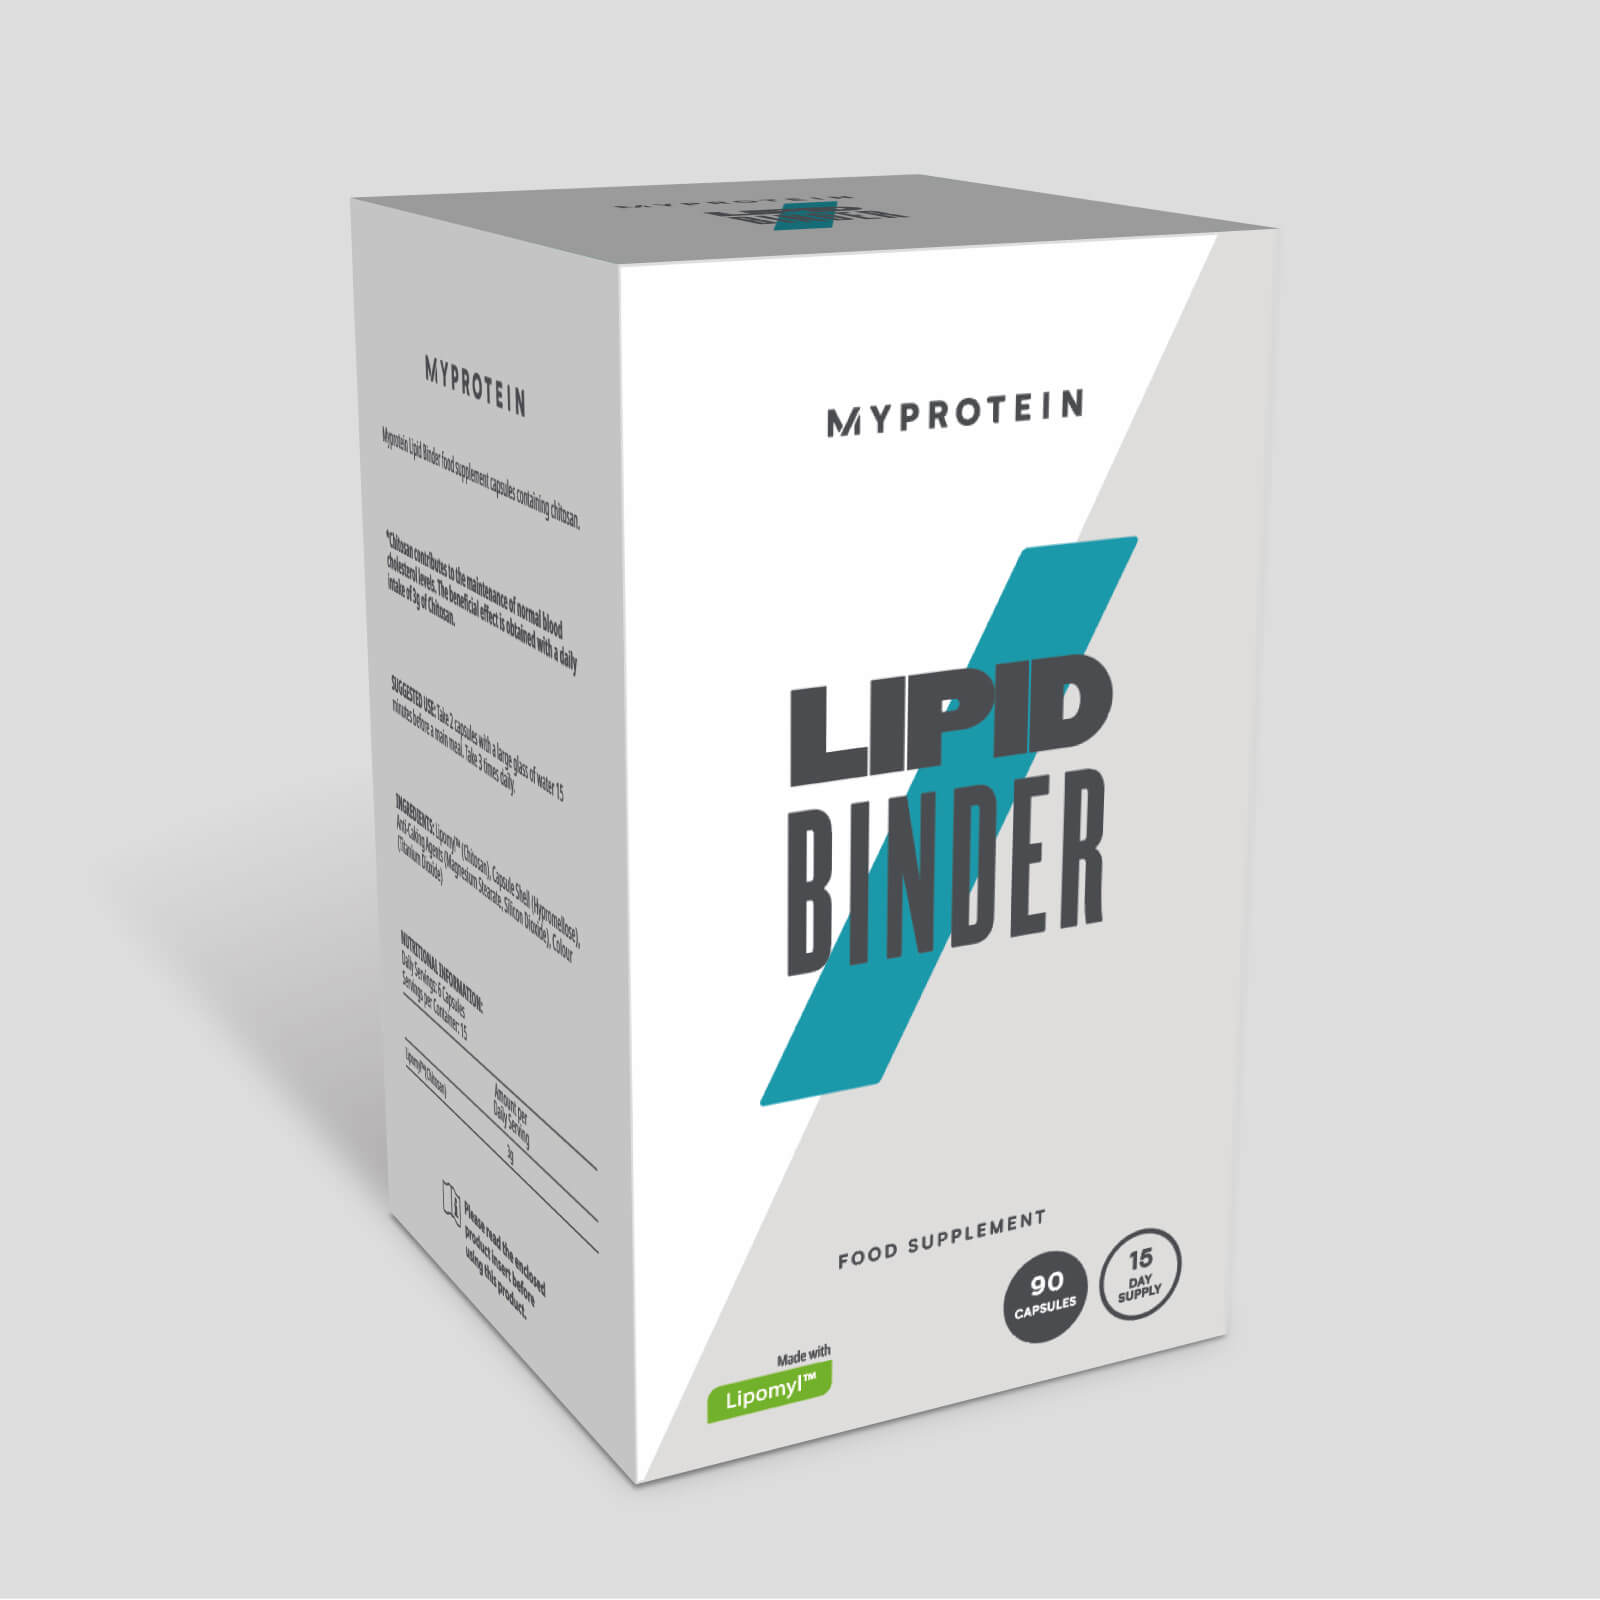 Myprotein Tablety Lipid Binder - 30tablets - Box